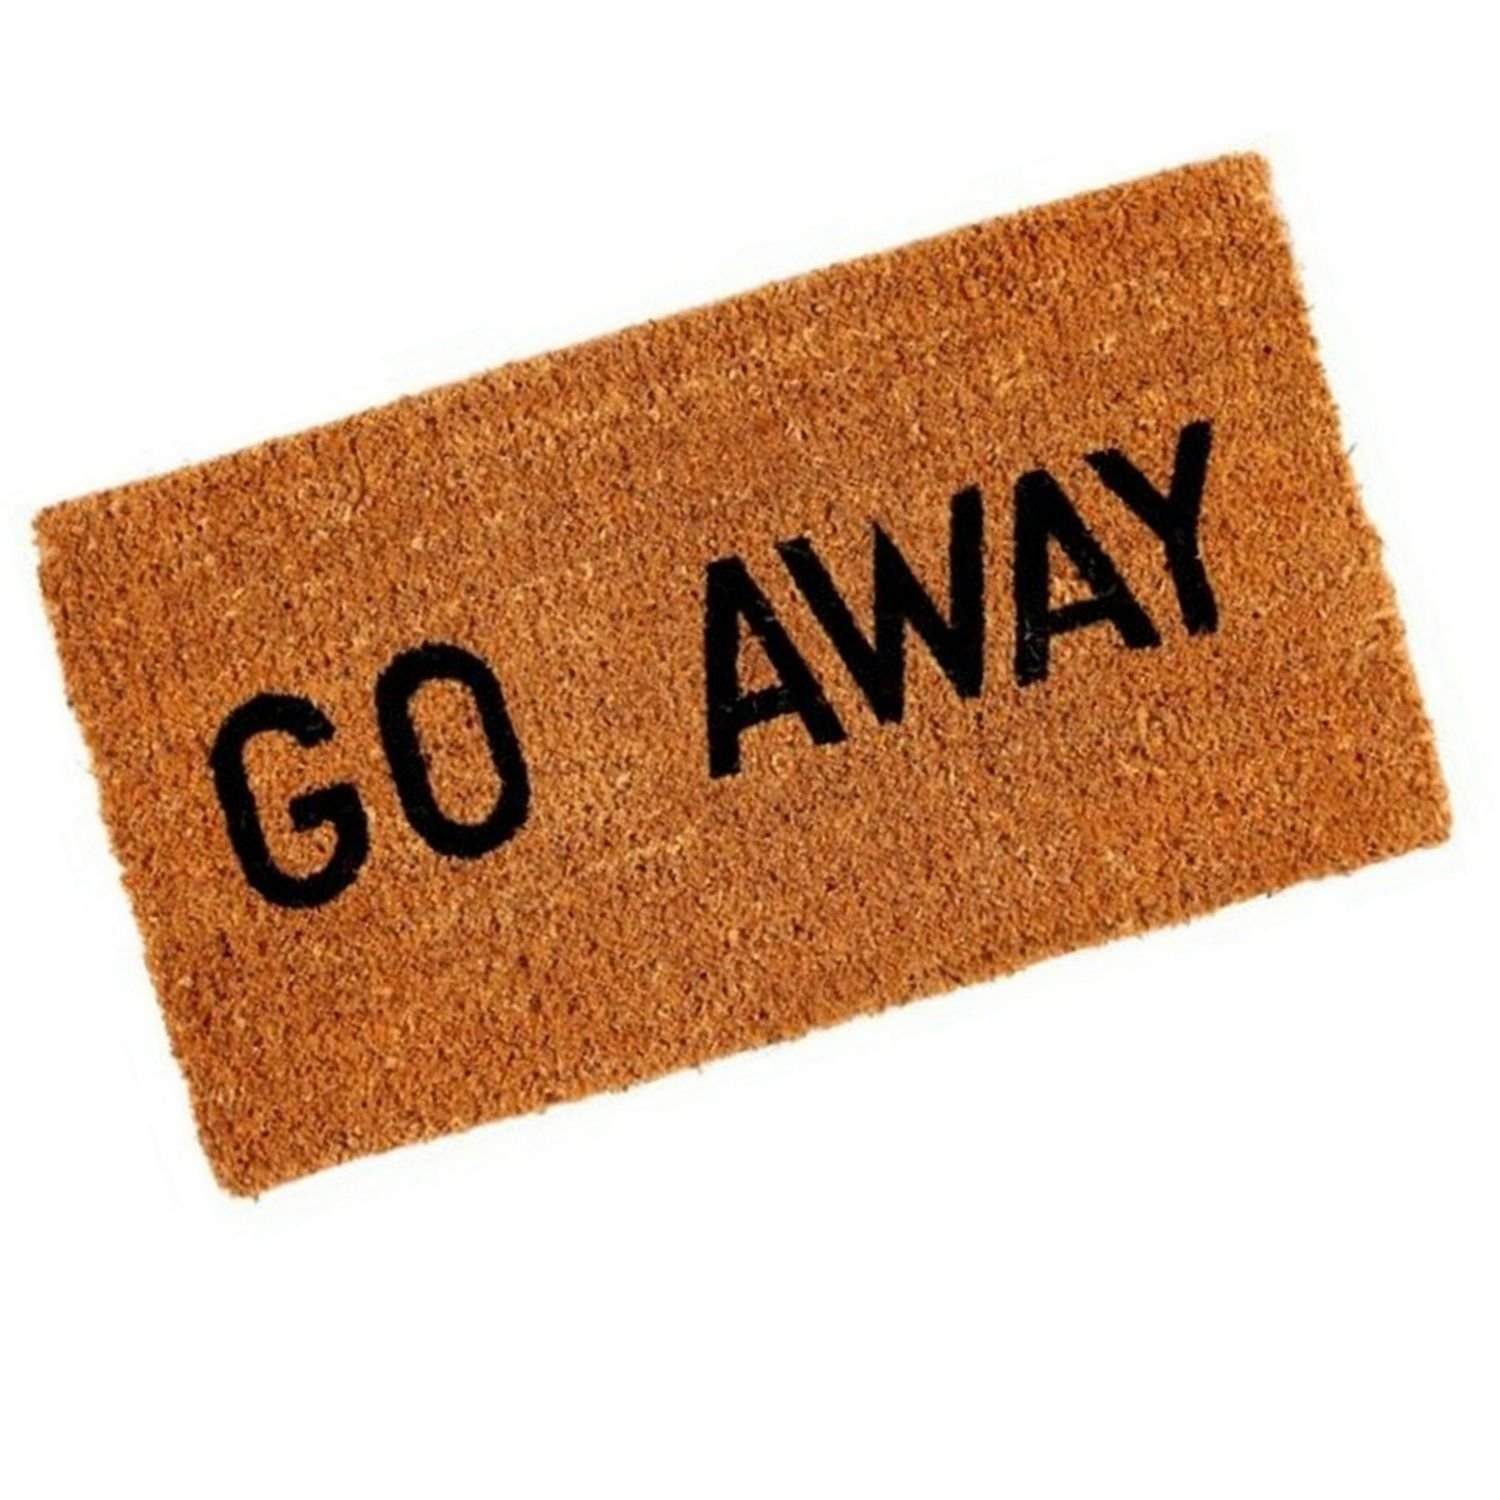 Go away картинка. Go away картинка для детей. Go away Doormat. Надпись go away. Make go away